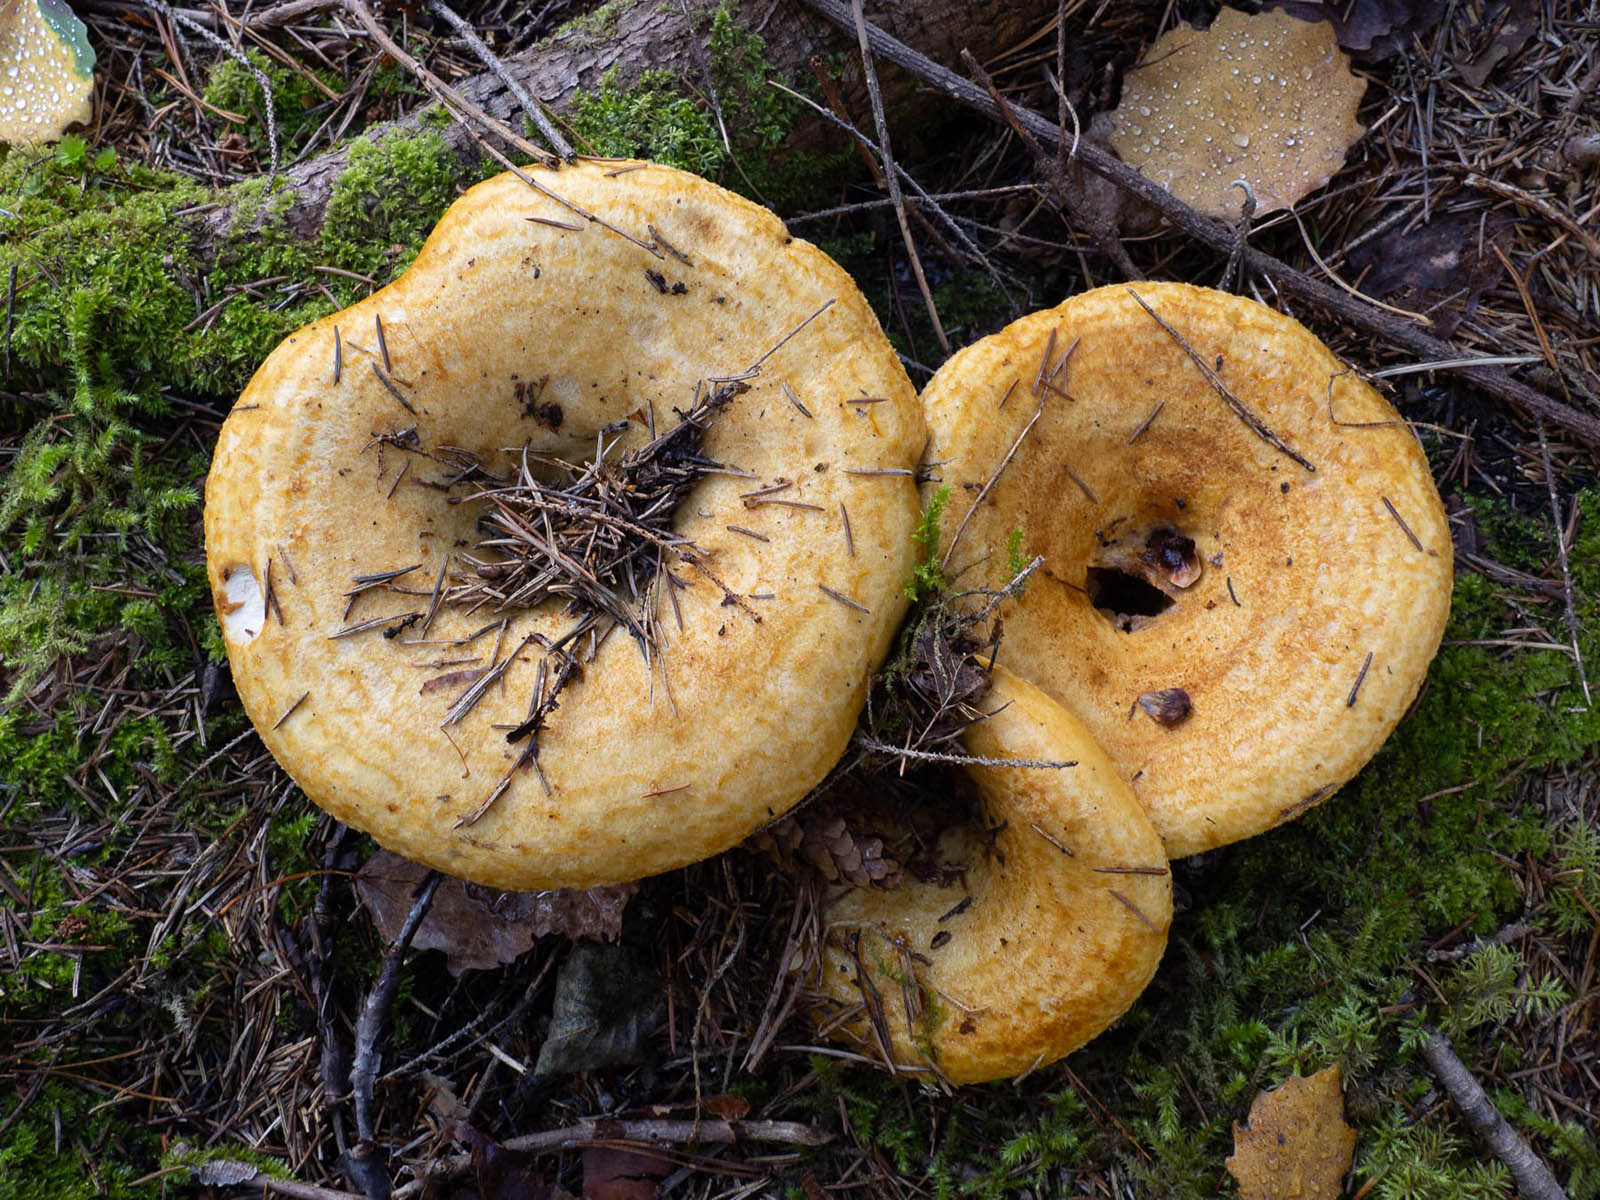 Груздь жёлтый (Lactarius scrobiculatus) в еловом лесу. Природный парк G?rv?ln, Стокгольм, октябрь 2020 года. Автор фото: Сутормина Марина